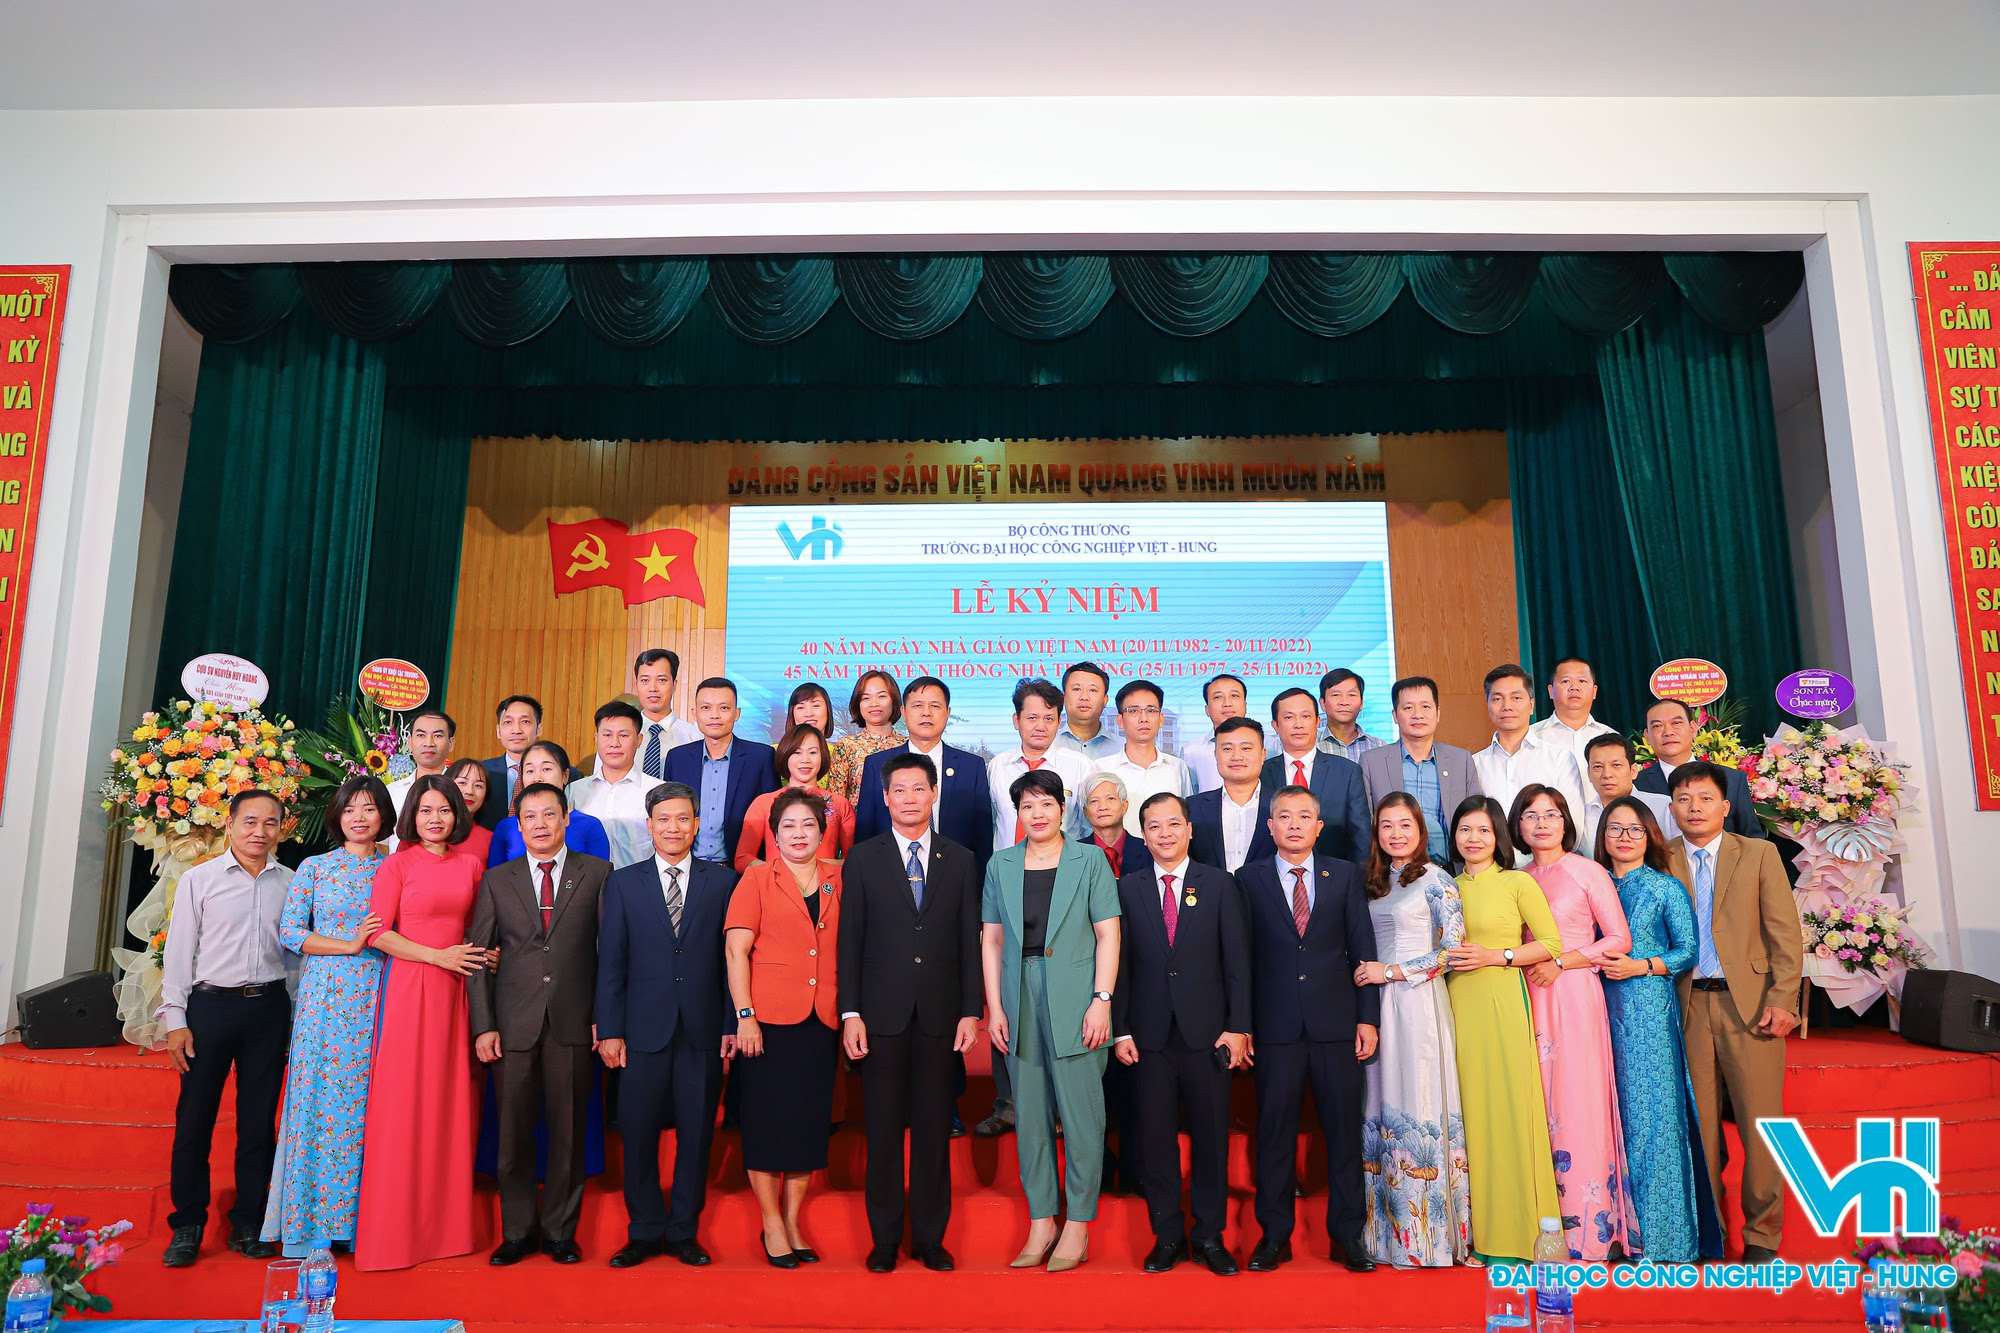 Lễ kỷ niệm 40 năm ngày nhà giáo Việt Nam và 45 năm ngày thành lập trường ĐH Việt - Hung - Ảnh 9.